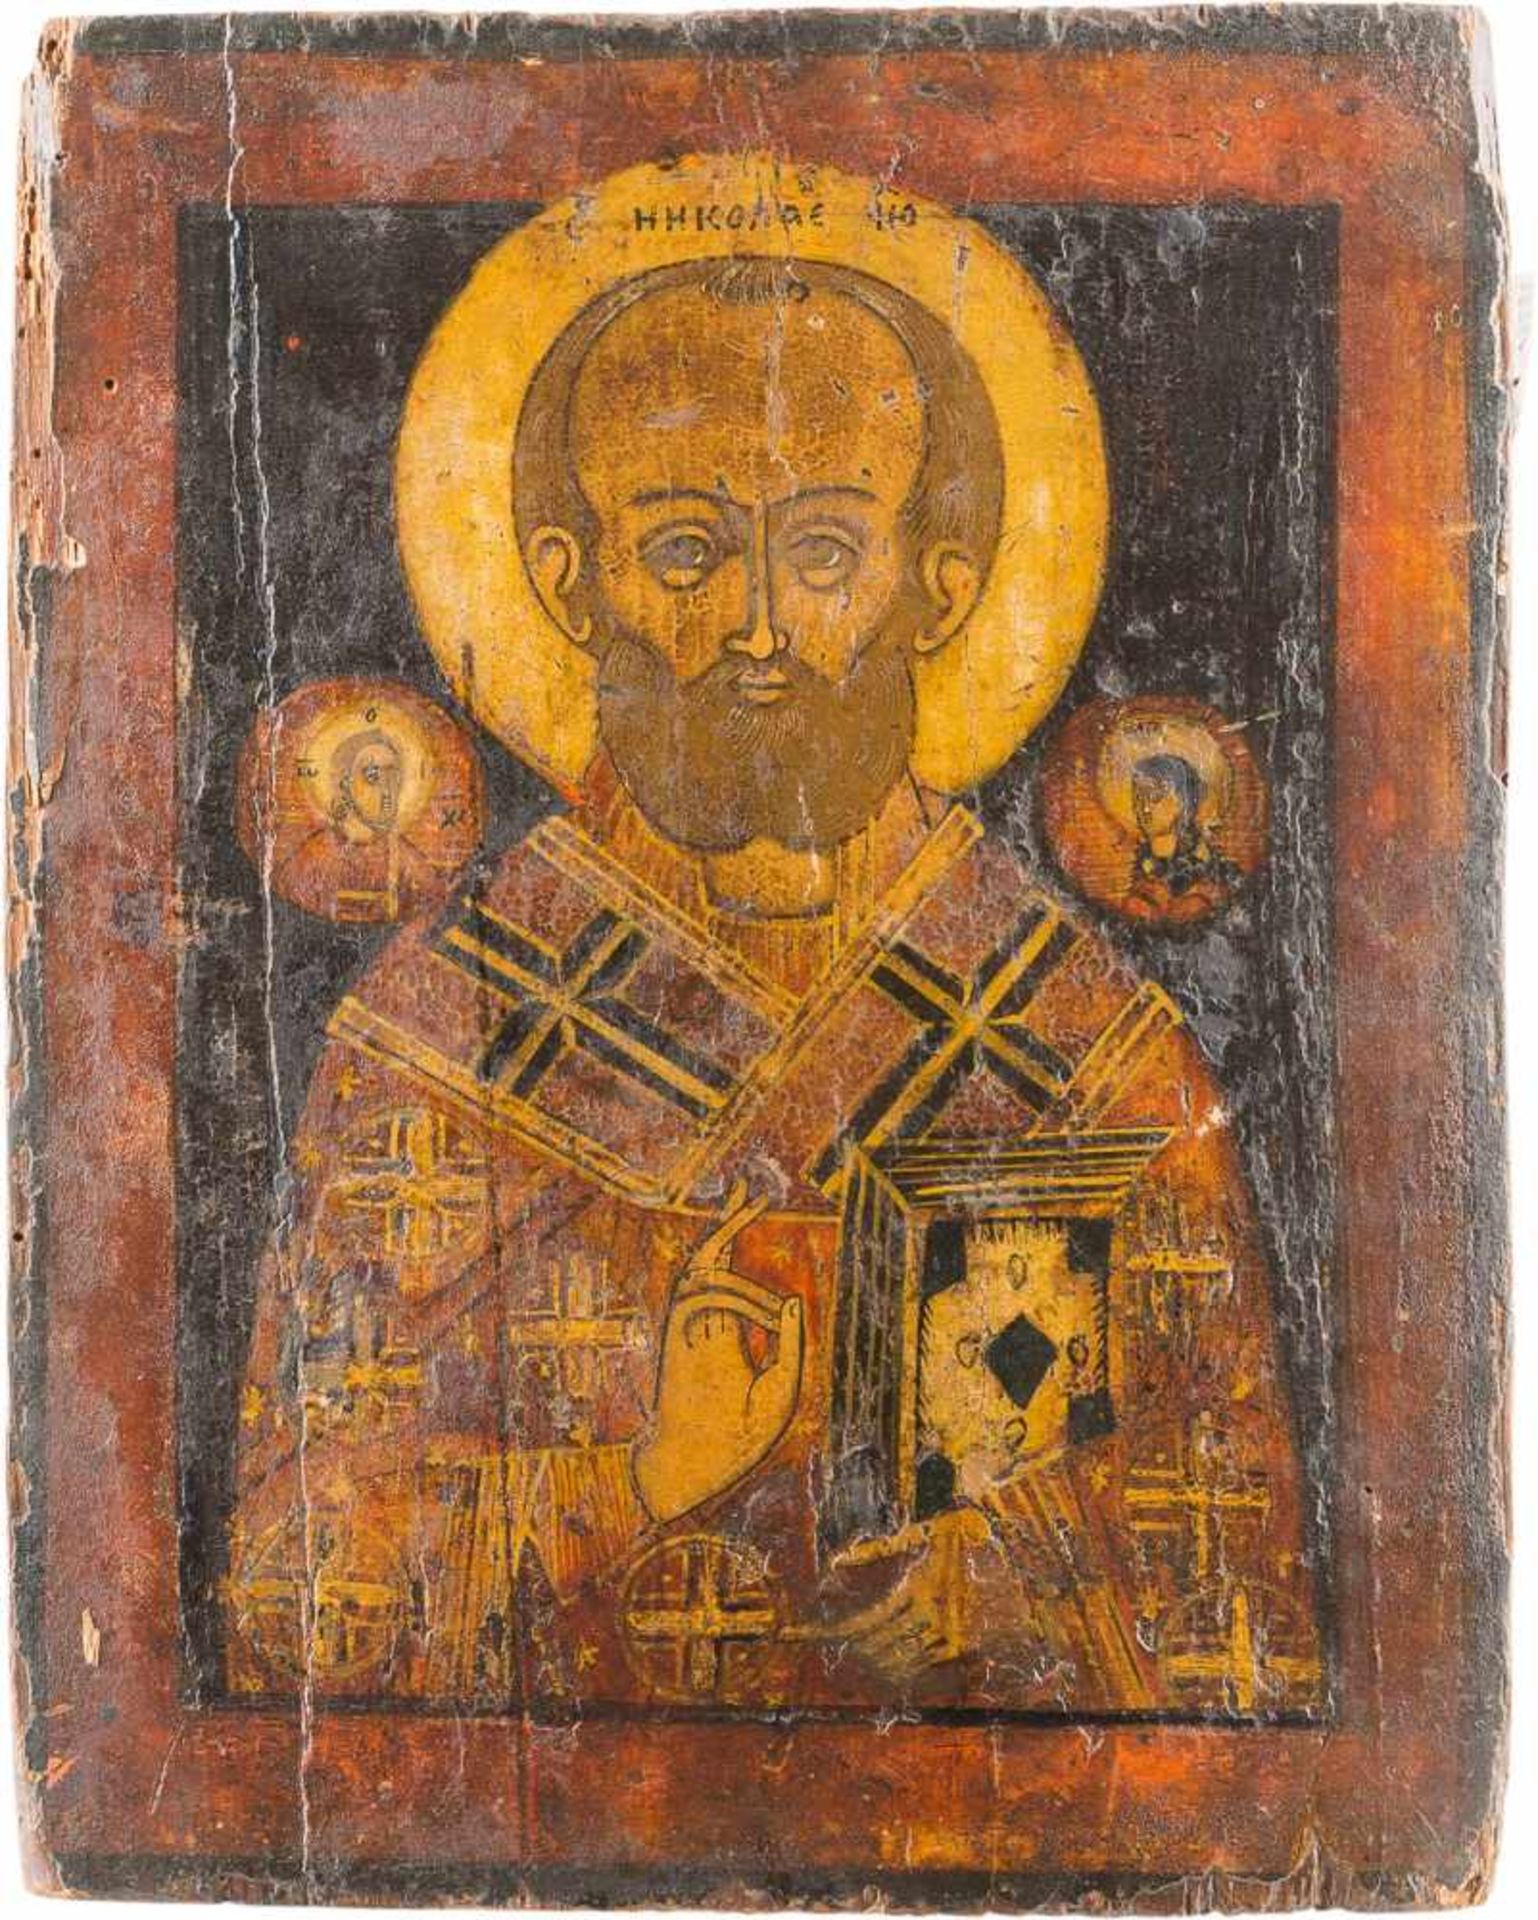 DREI IKONEN: HEILIGER NIKOLAUS VON MYRA UND DIE APOSTEL PETRUS UND PAULUS Russland/Griechenland, - Image 2 of 4